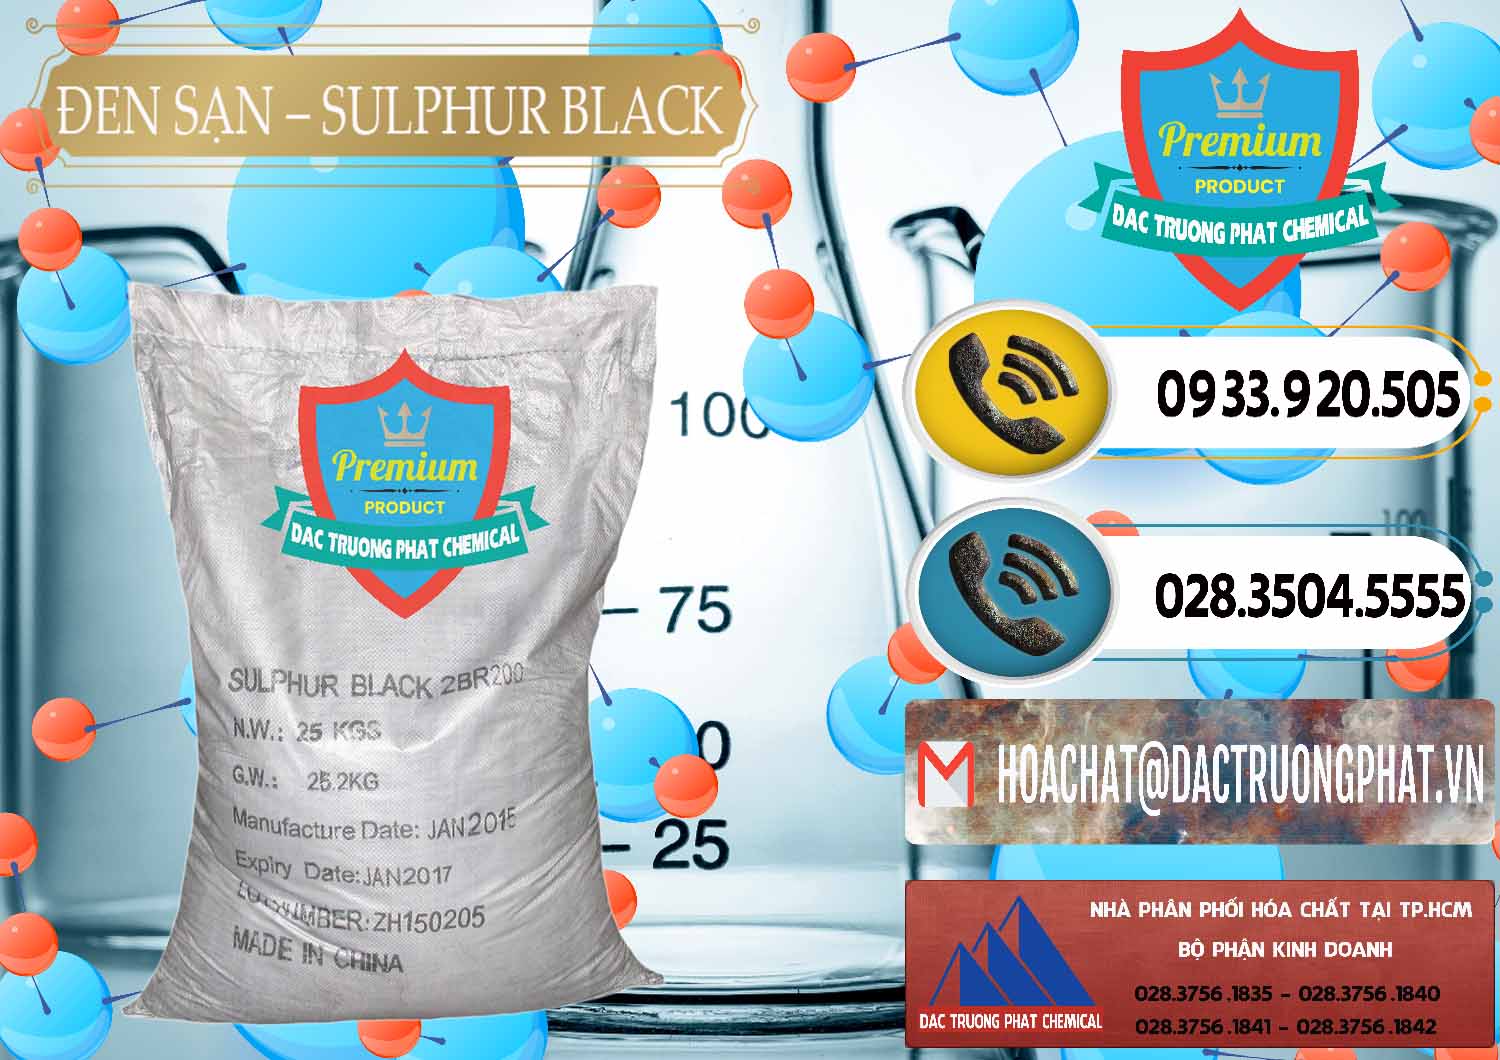 Cty nhập khẩu và bán Đen Sạn – Sulphur Black Trung Quốc China - 0062 - Chuyên phân phối - nhập khẩu hóa chất tại TP.HCM - hoachatdetnhuom.vn